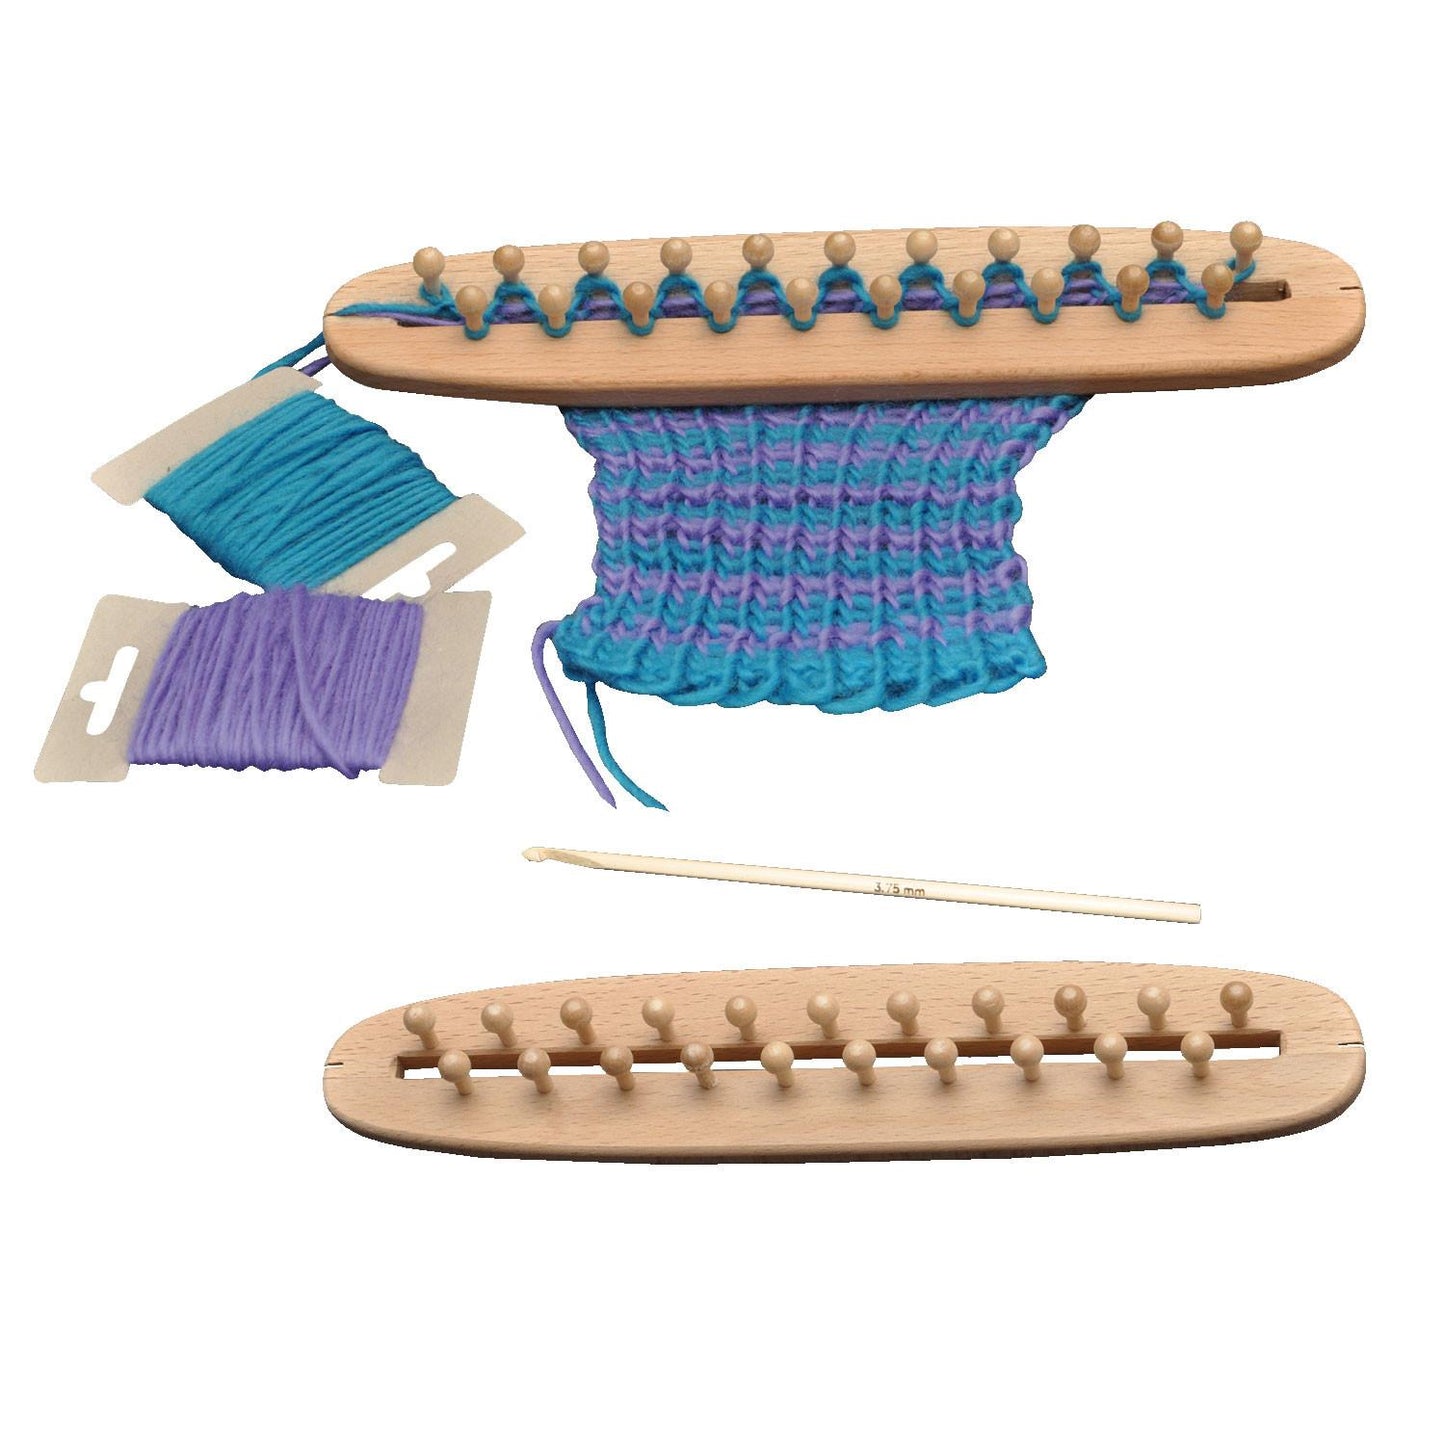 knitting board